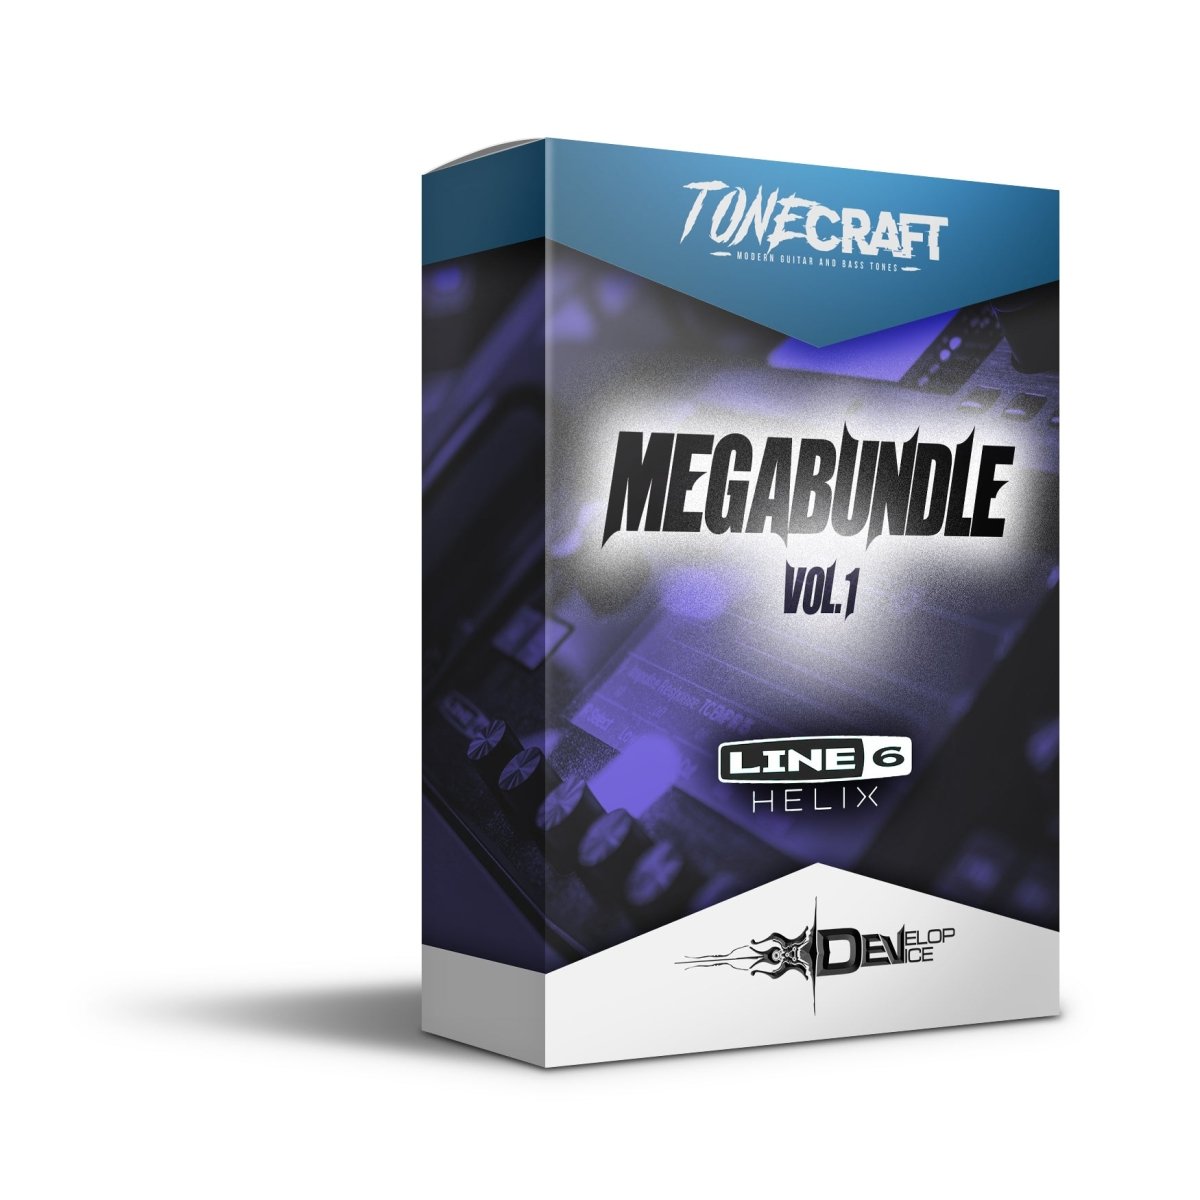 Megabundle Vol. 1 for Line 6 Helix - Line 6 Helix Presets - Develop Device Studio